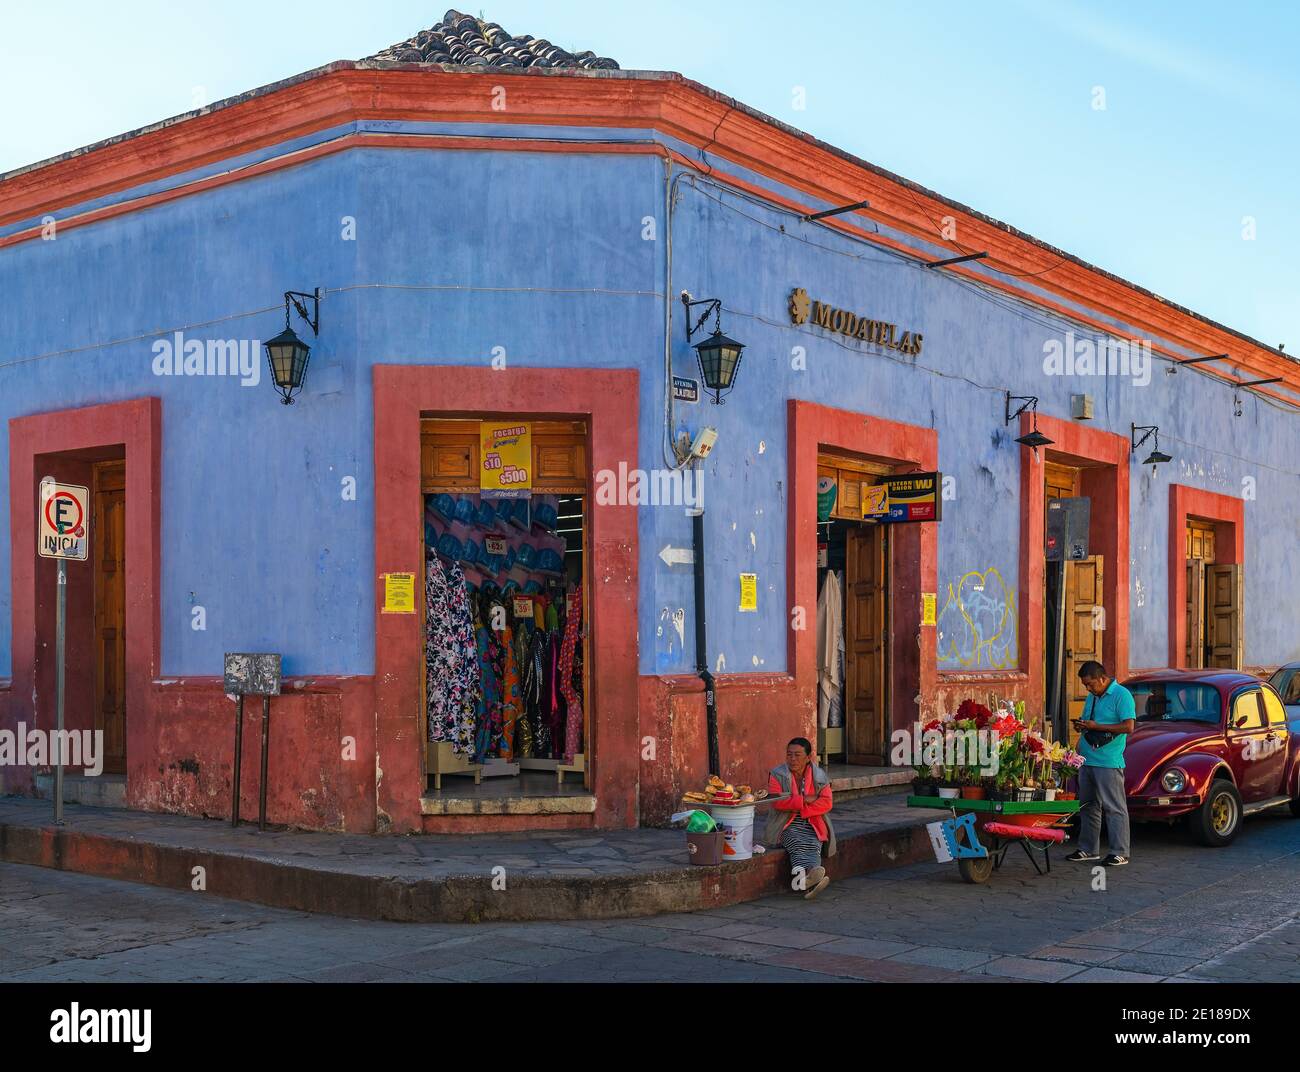 Mexikanisches Stadtleben in San Cristobal mit einer einheimischen maya-Verkäuferin und einer bunten Fassade, San Cristobal de las Casas, Mexiko. Stockfoto